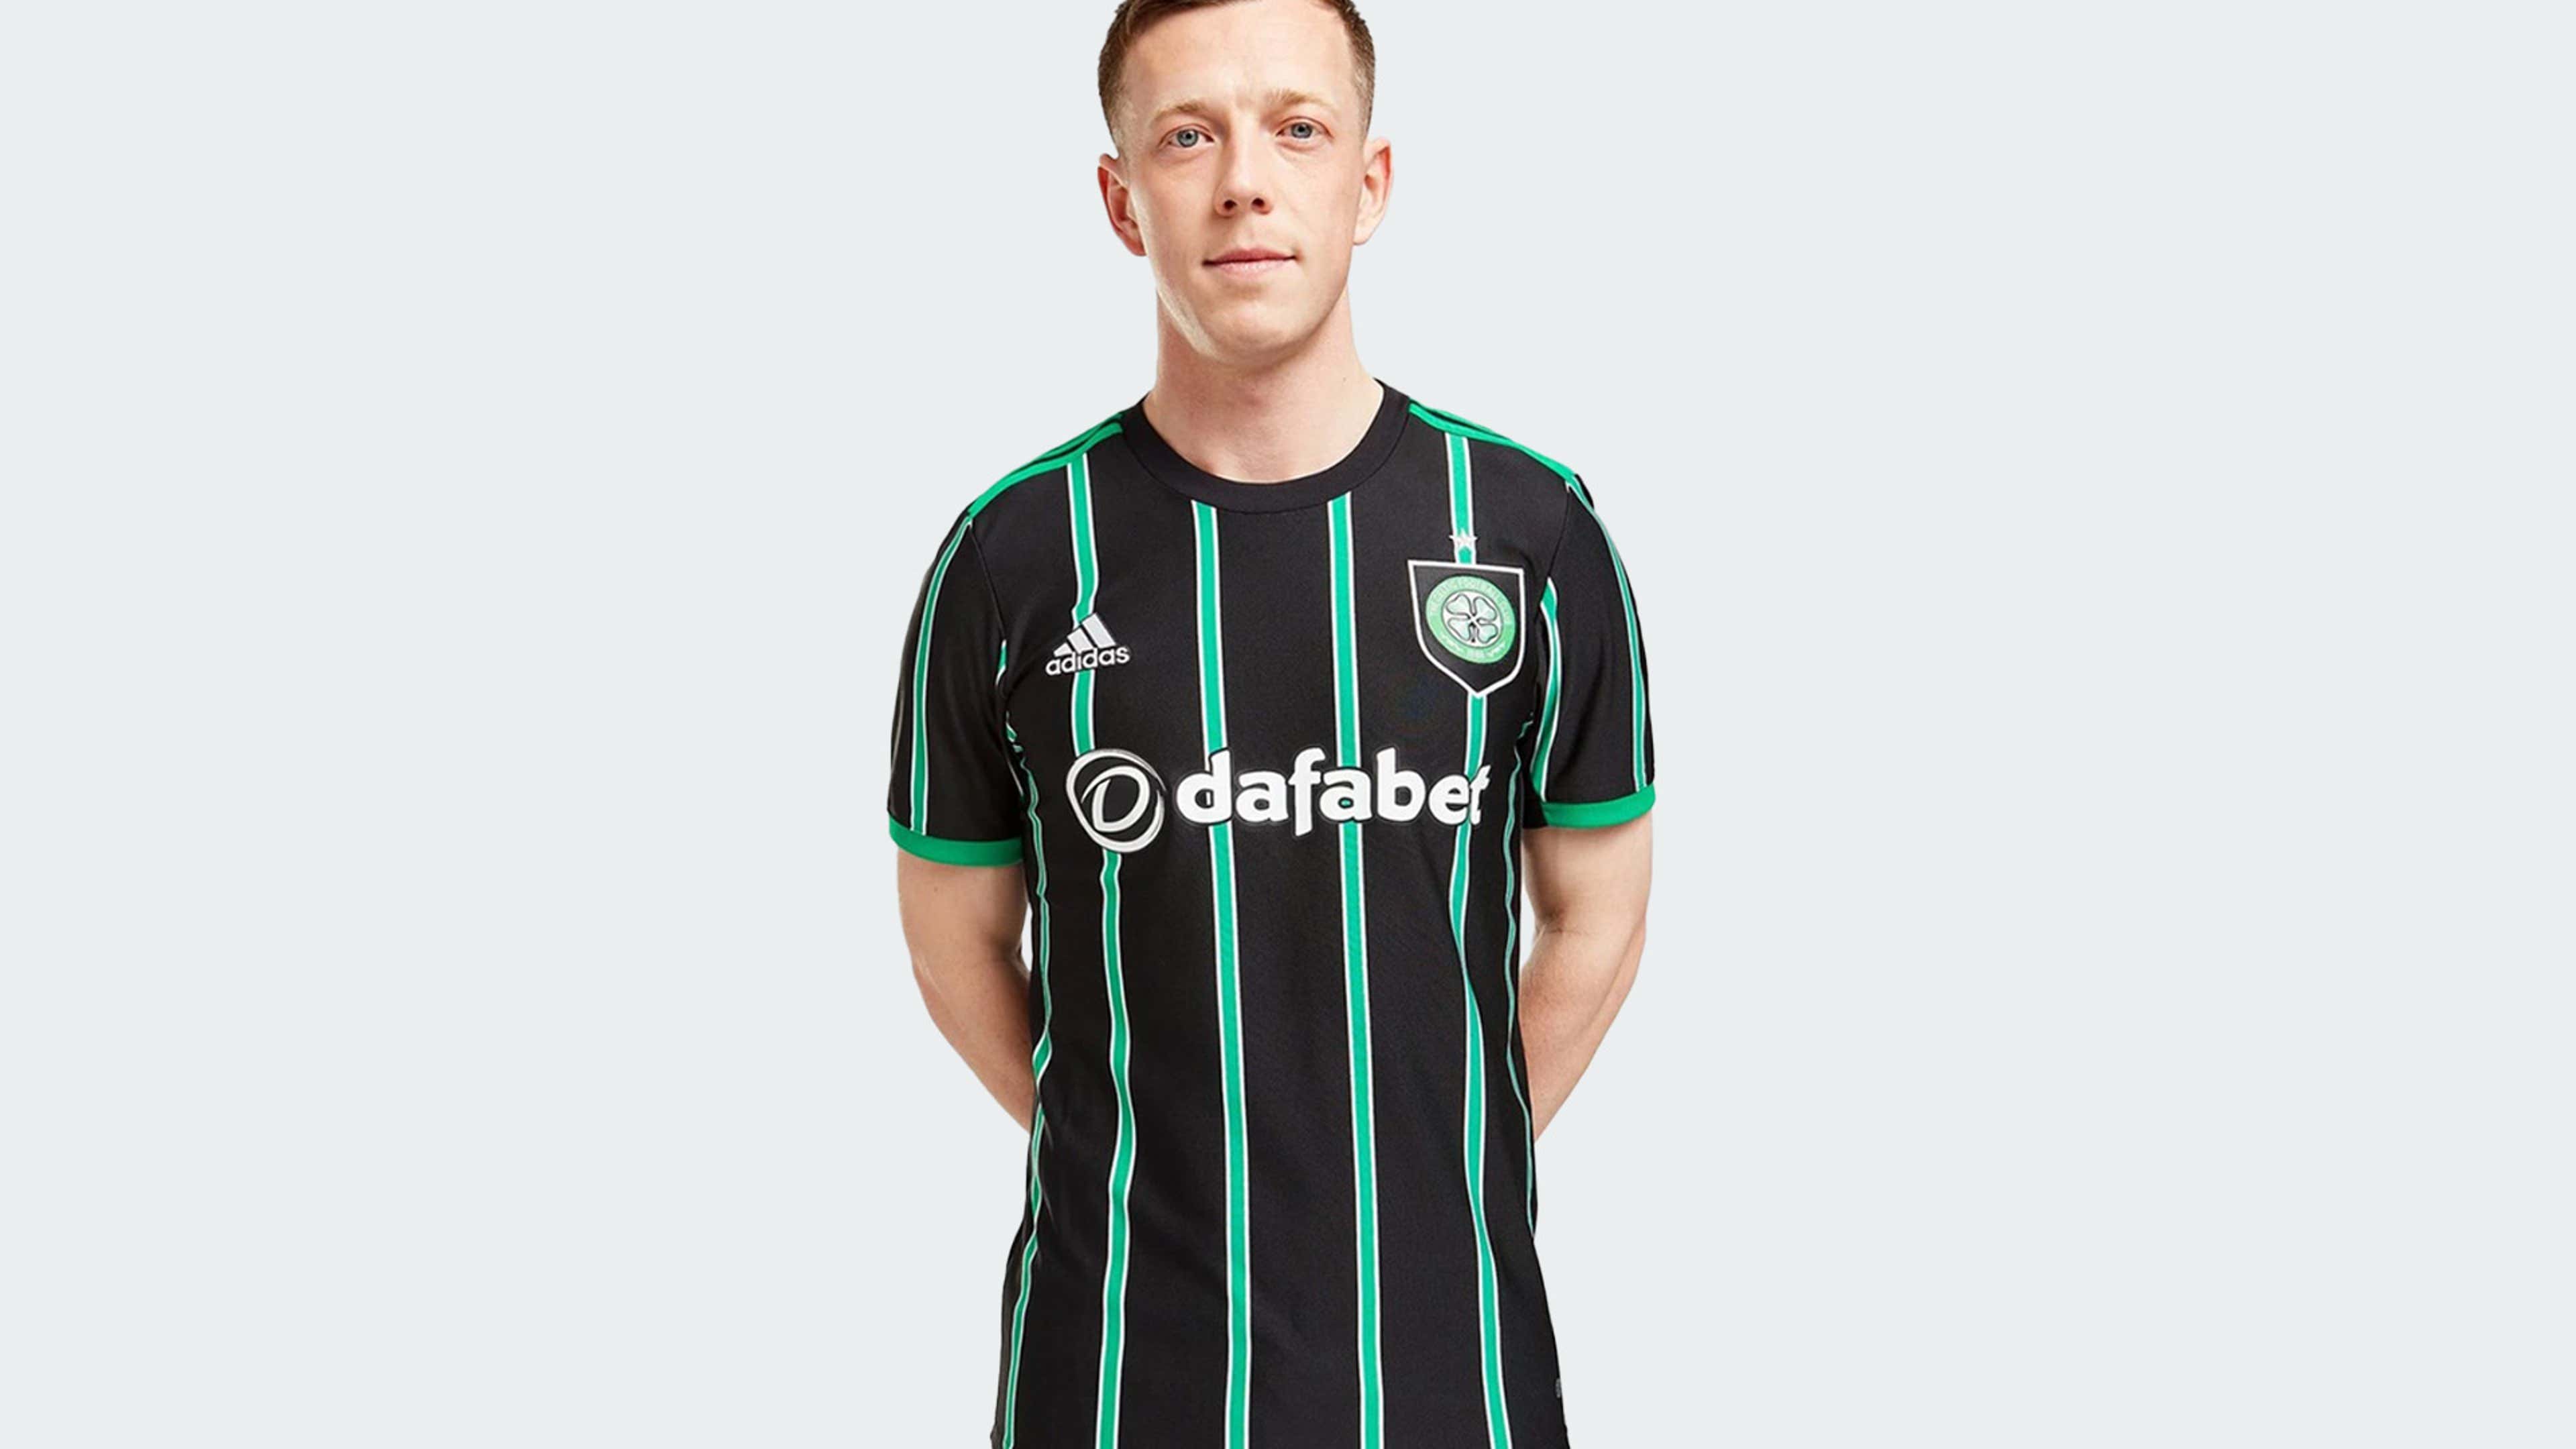 Adidas Celtic FC 2020/21 Away Shirt Women'S - Green for Women